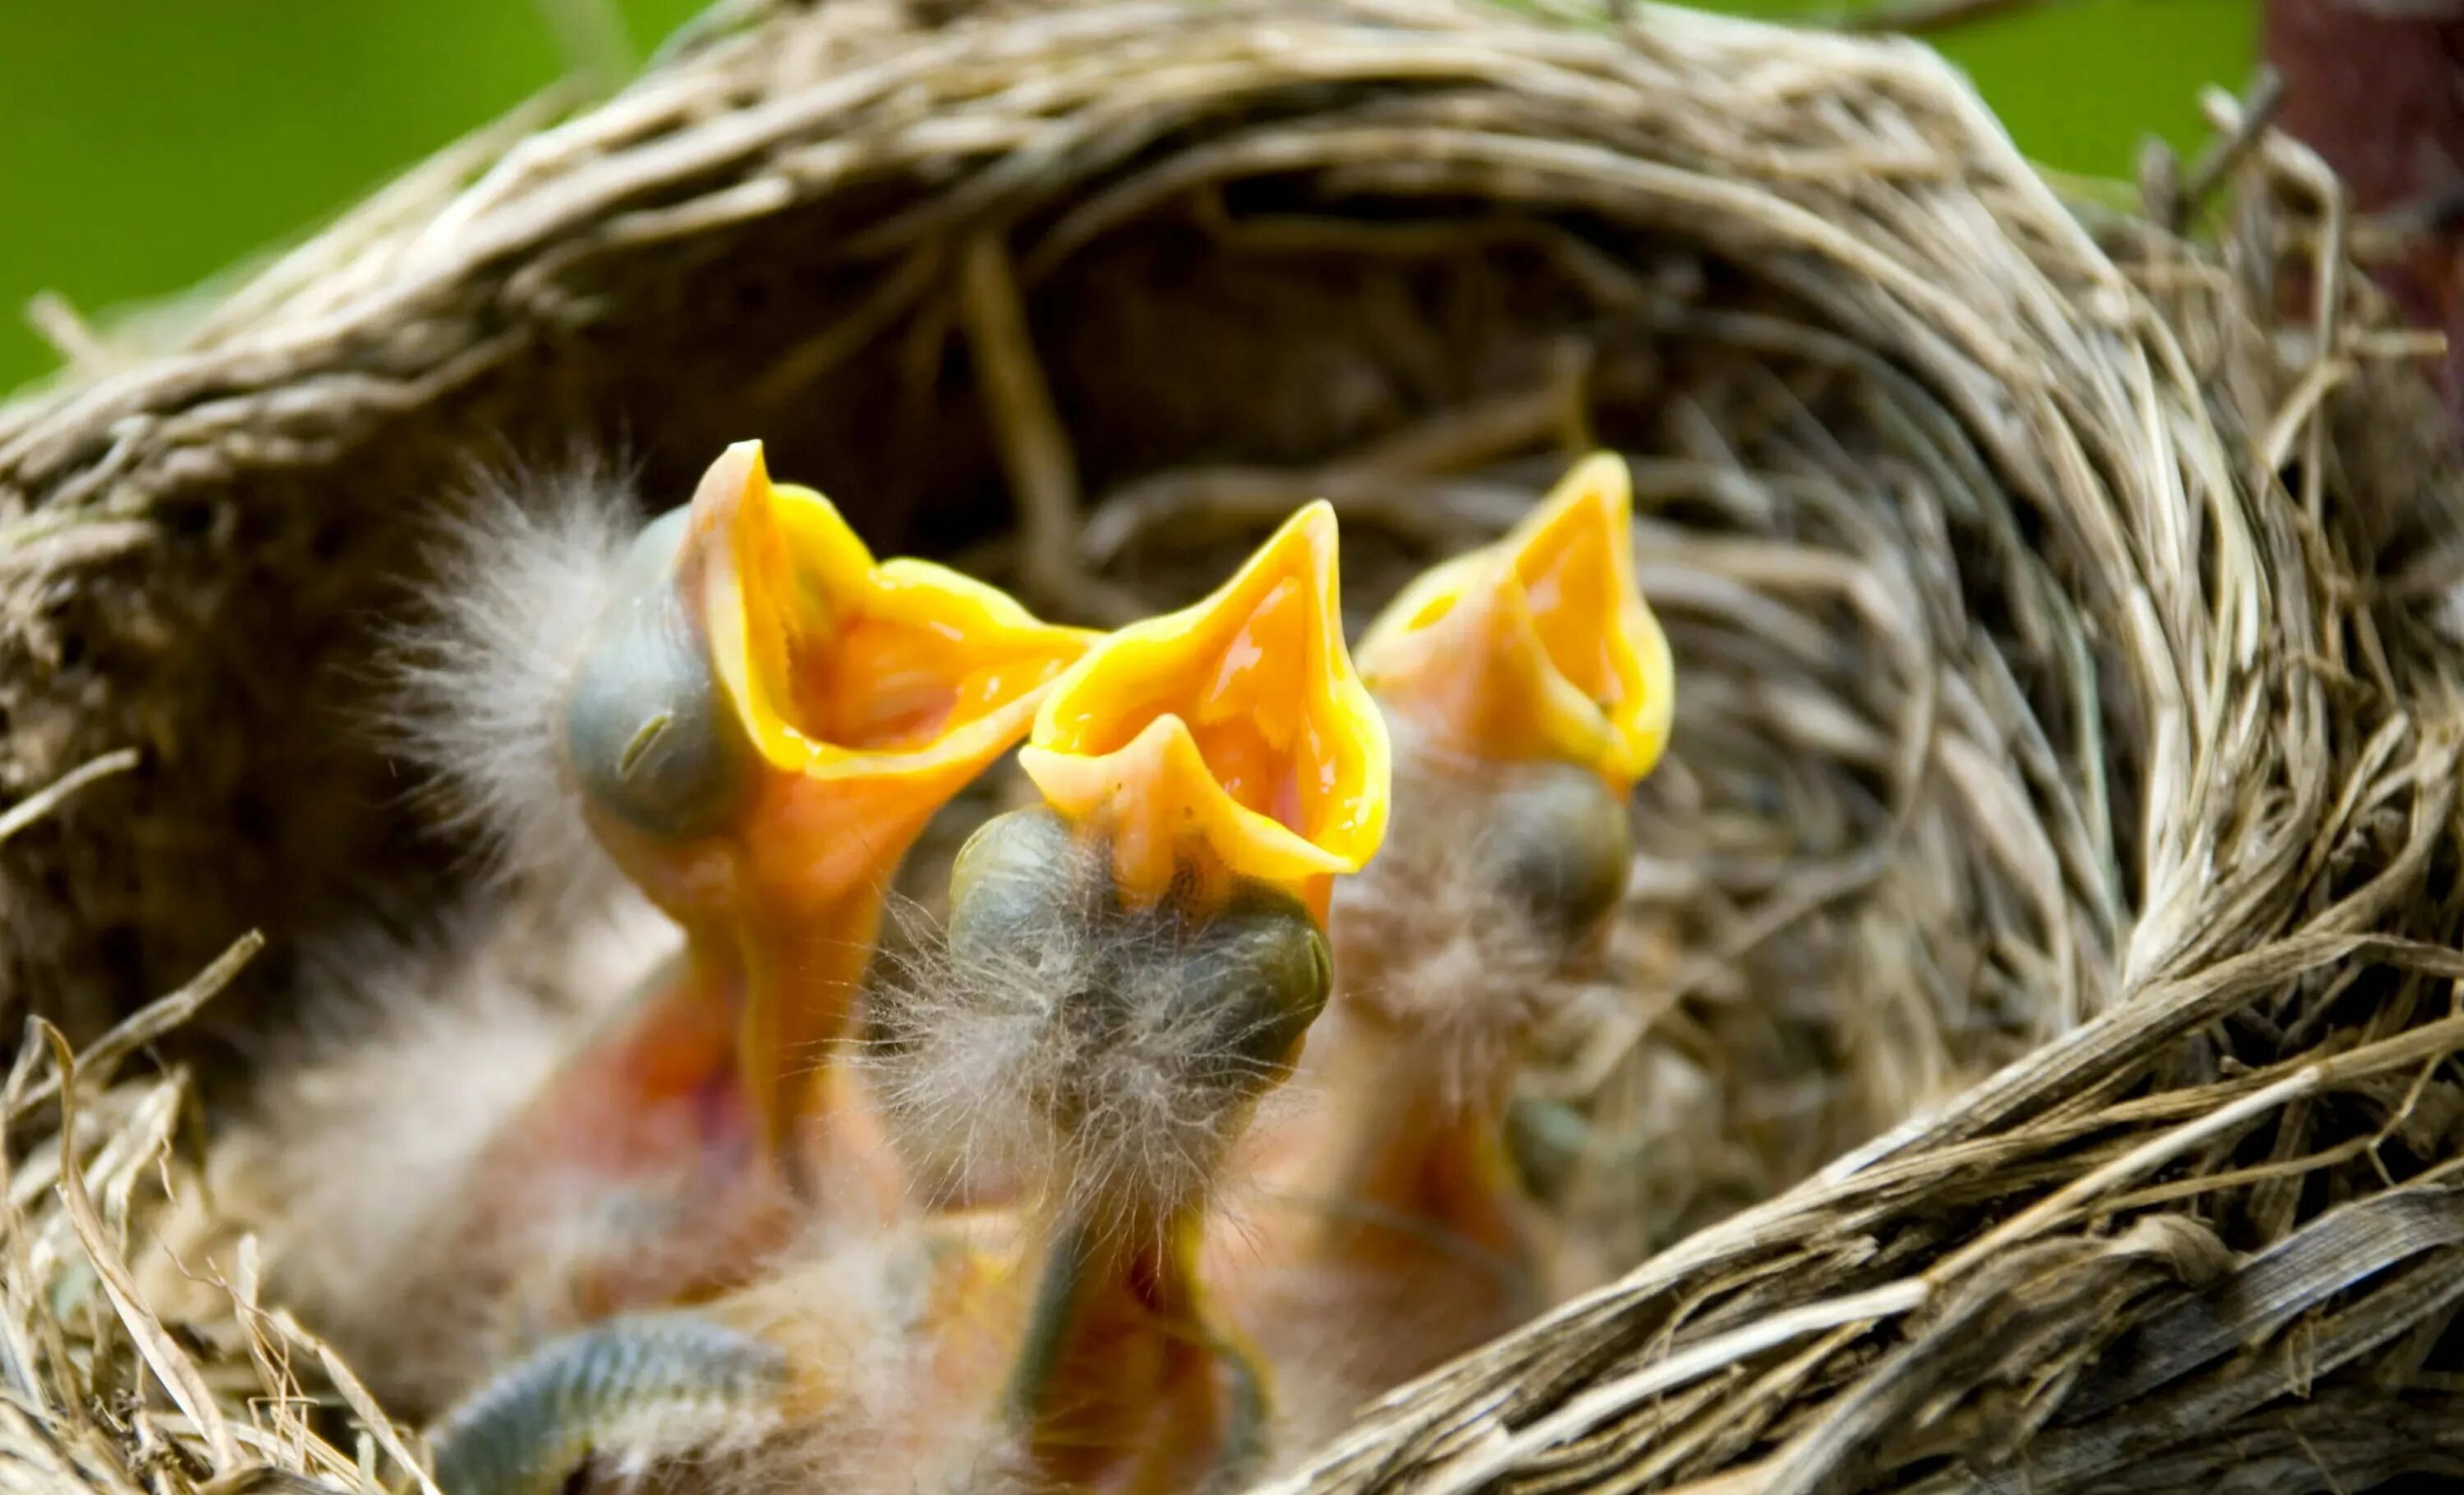 В 1 гнезде 3 птенца. Птенцы с открытыми ртами. Птенчики в гнезде. Гнездовые птенцы. Голодные птенцы в гнезде.